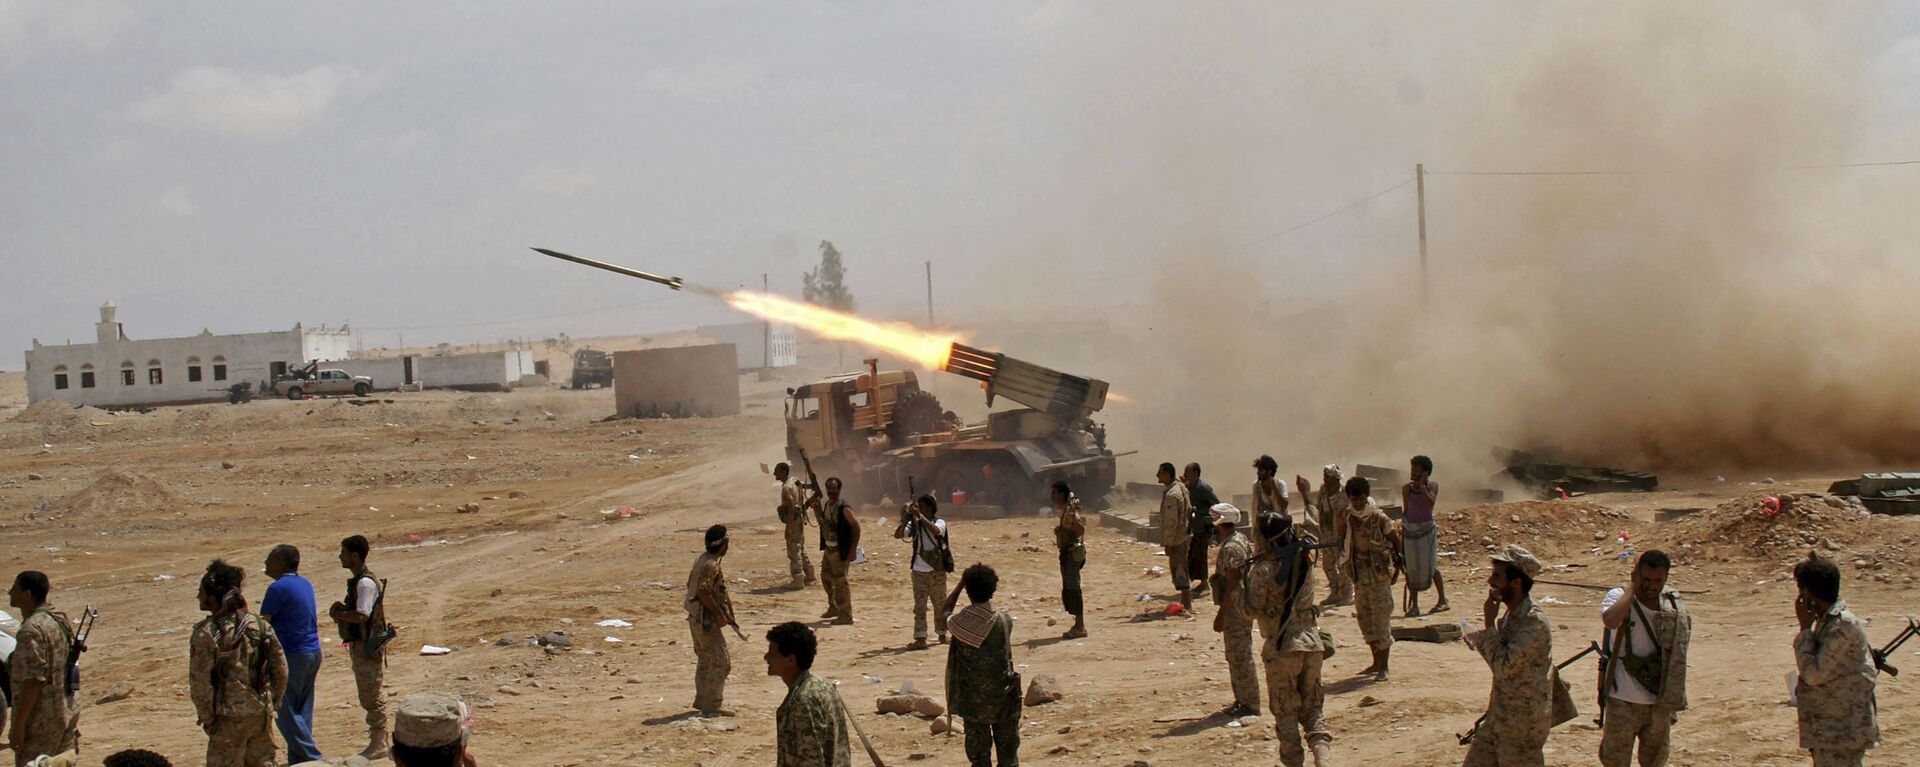 جنود من الجيش اليمني يطلقون صواريخ - سبوتنيك عربي, 1920, 30.03.2021